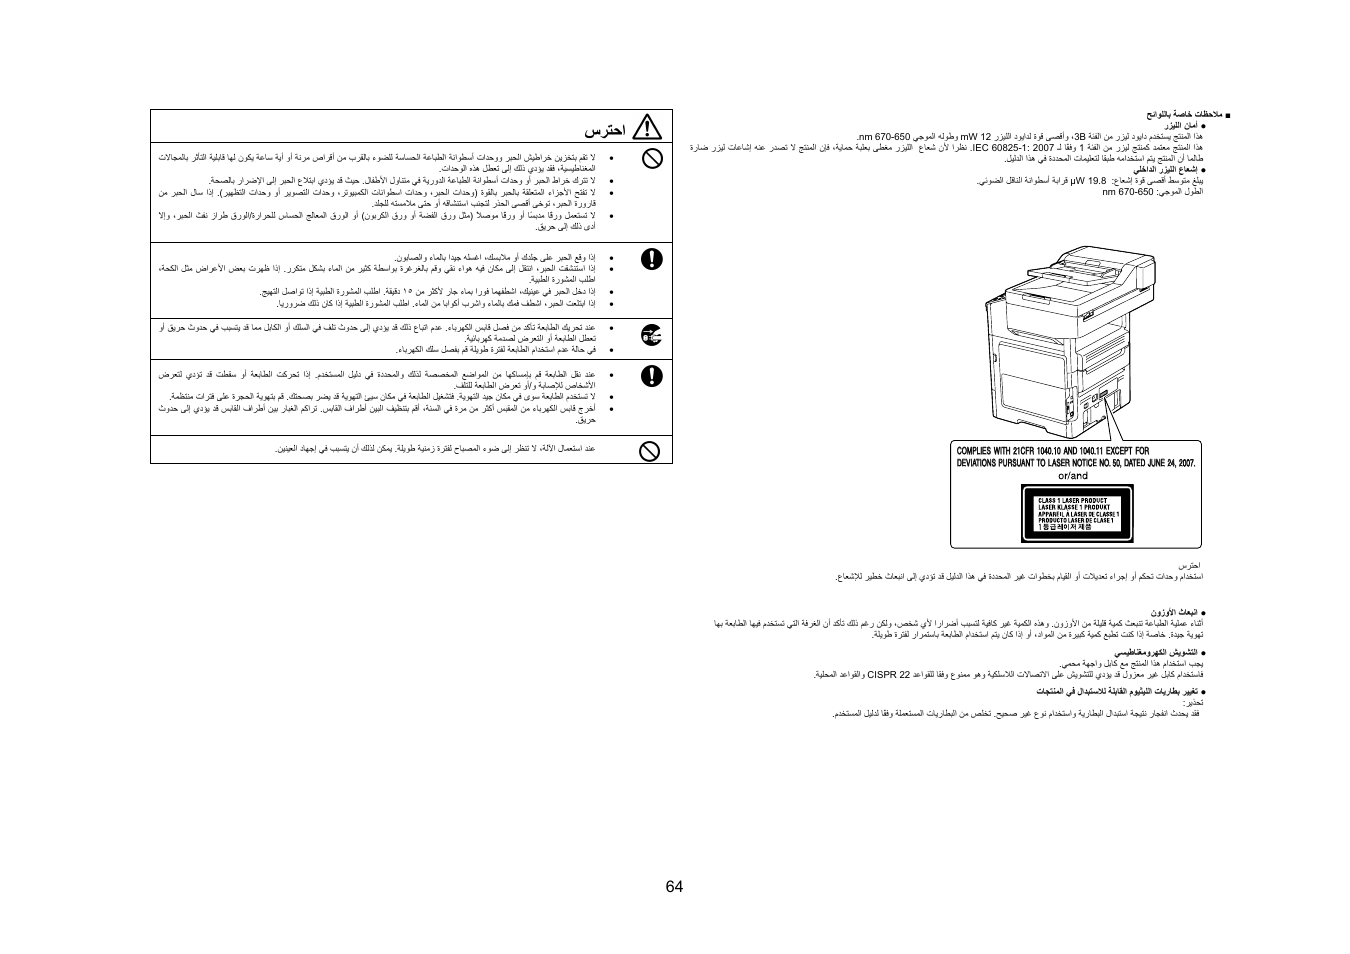 سﺮﺘﺣا | Konica Minolta bizhub 4050 User Manual | Page 65 / 67